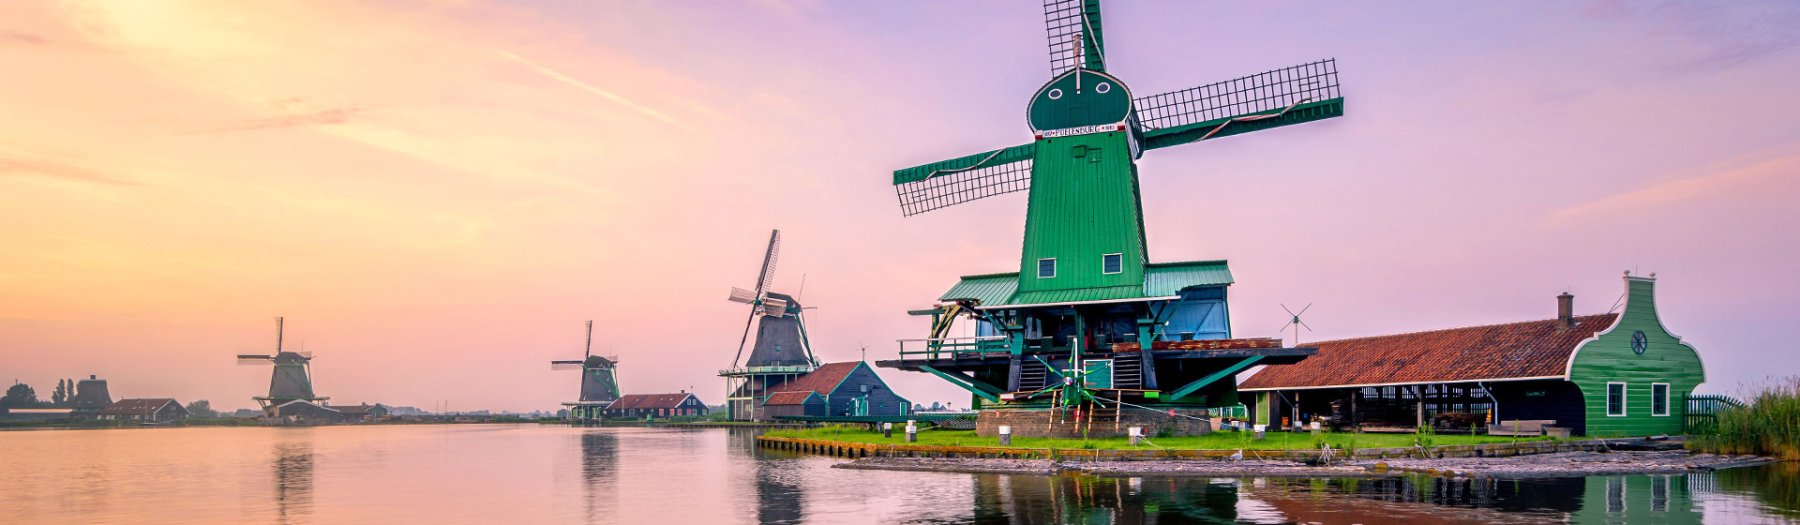 72 schöne Ferienhäuser in Holland warten auf Dich